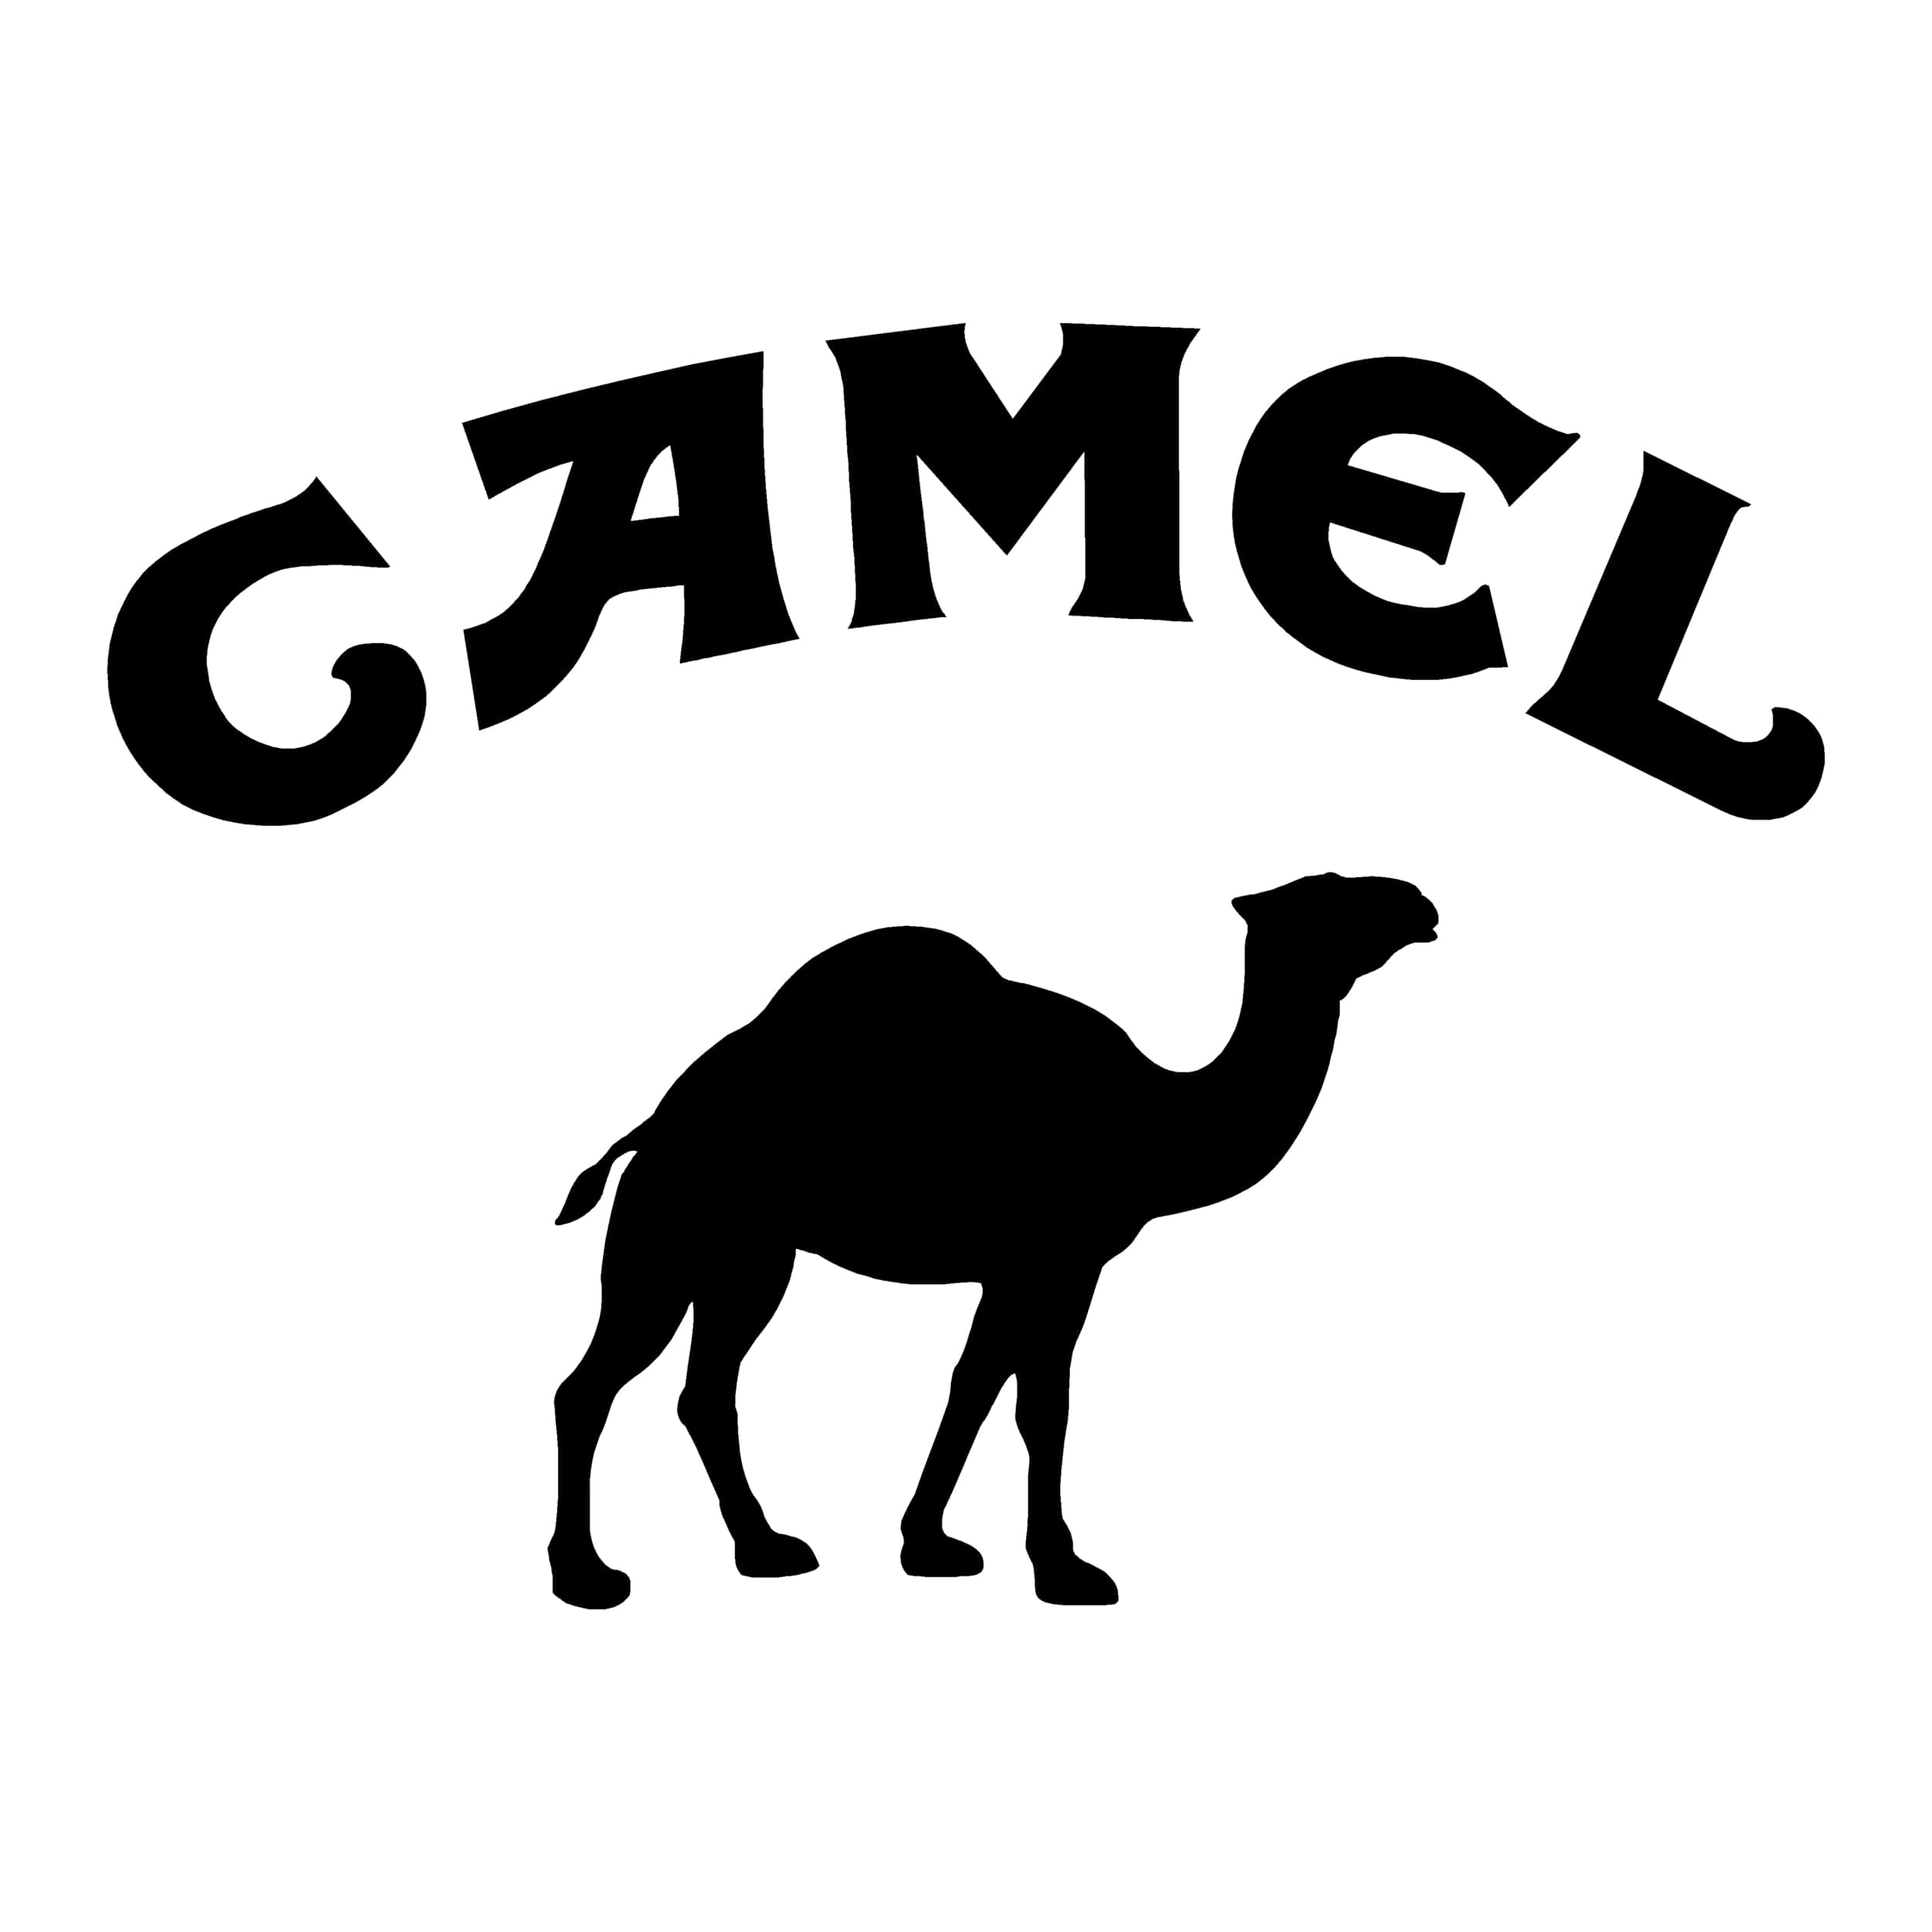 stickers-camel-trophy-ref-5-dakar-land-rover-4x4-tout-terrain-rallye-competition-pneu-tuning-amortisseur-autocollant-fffsa-min